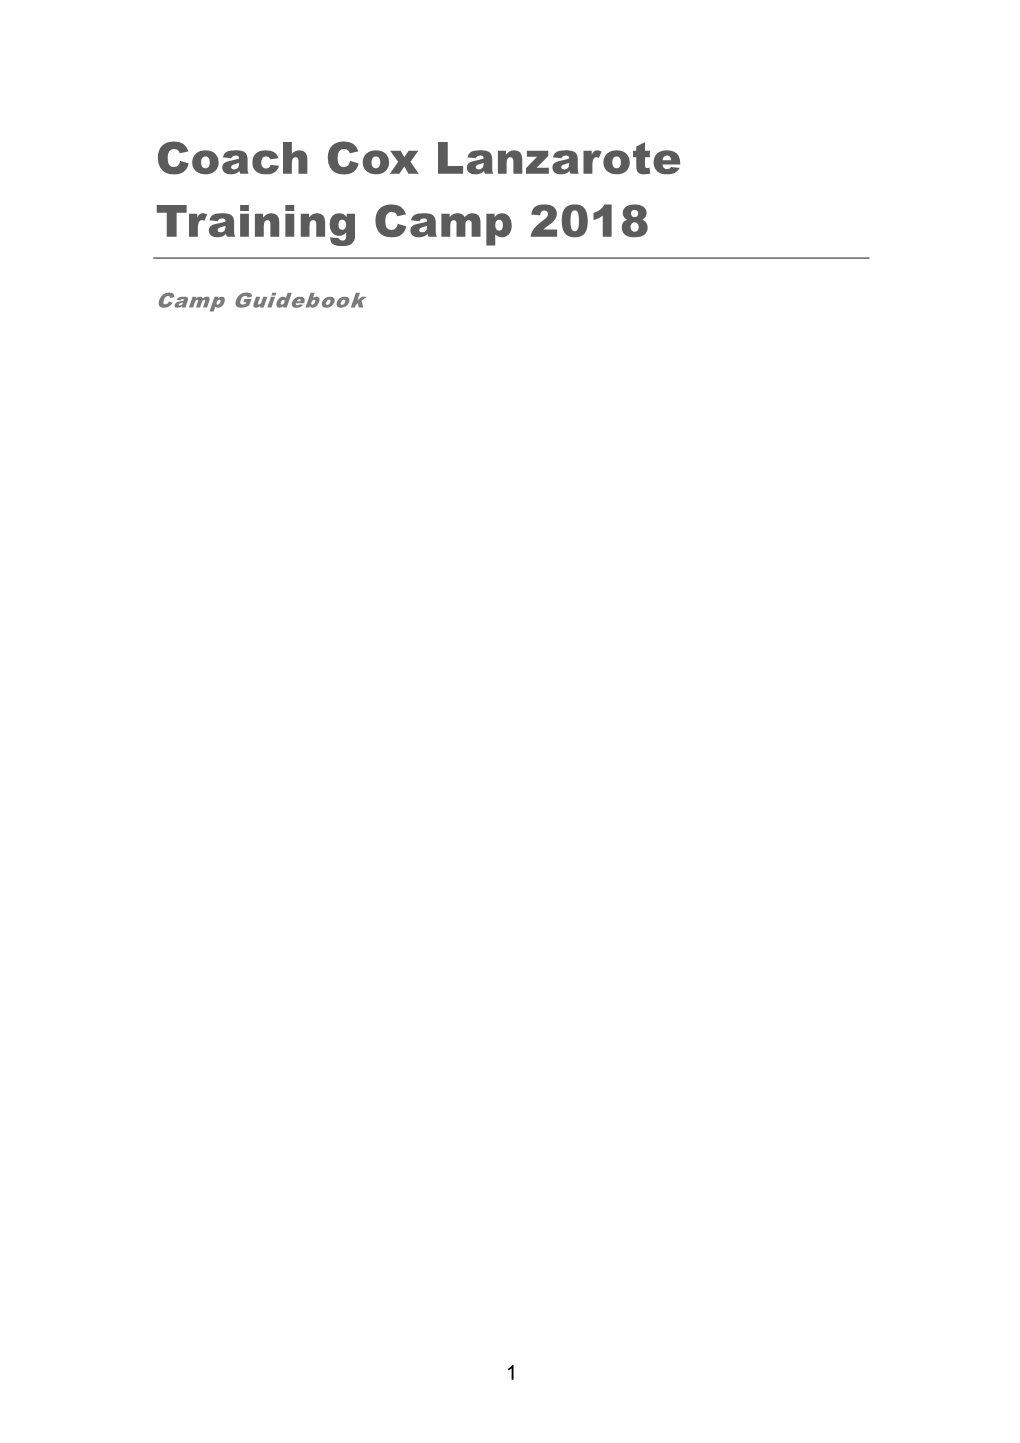 Coach Cox Lanzarote Training Camp 2018